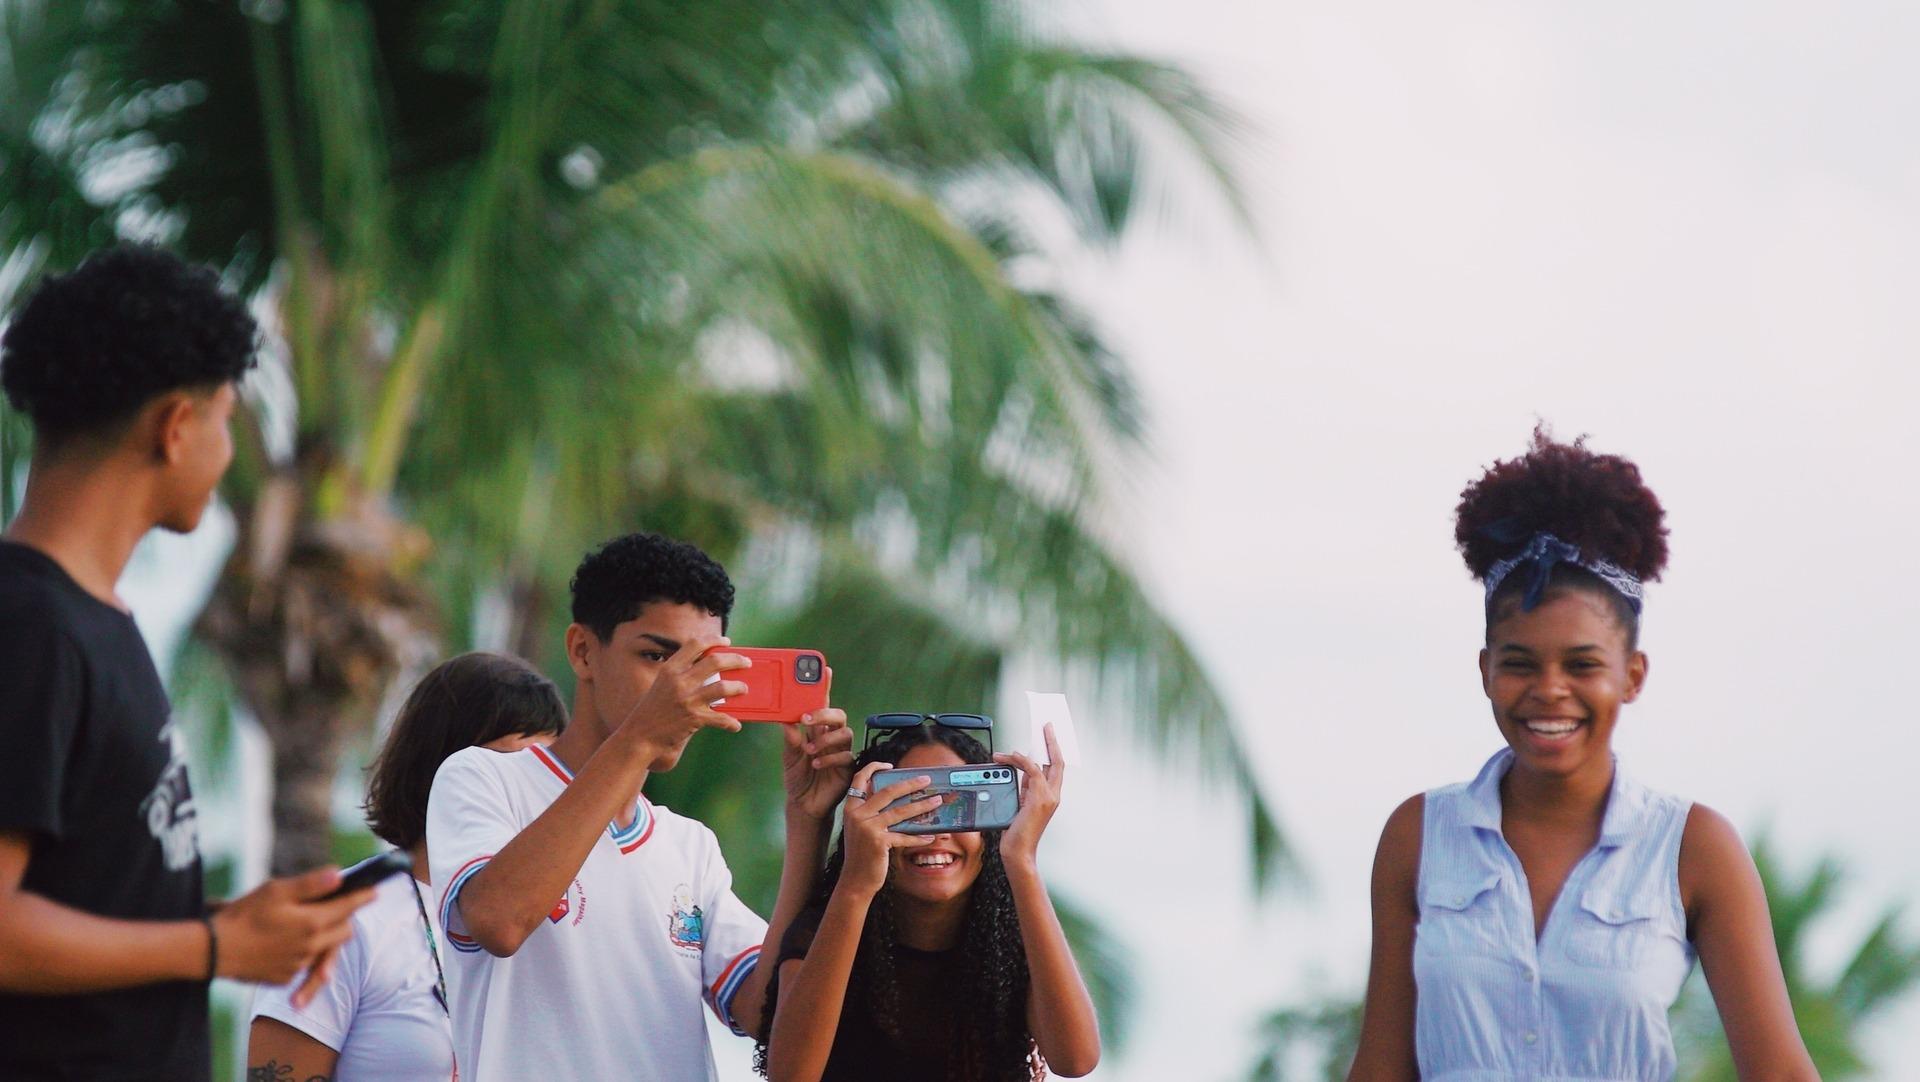 Mar, Cinema e Juventude: projeto de cinema comunitário fortaleceeducação popular nas ilhas da Bahia 